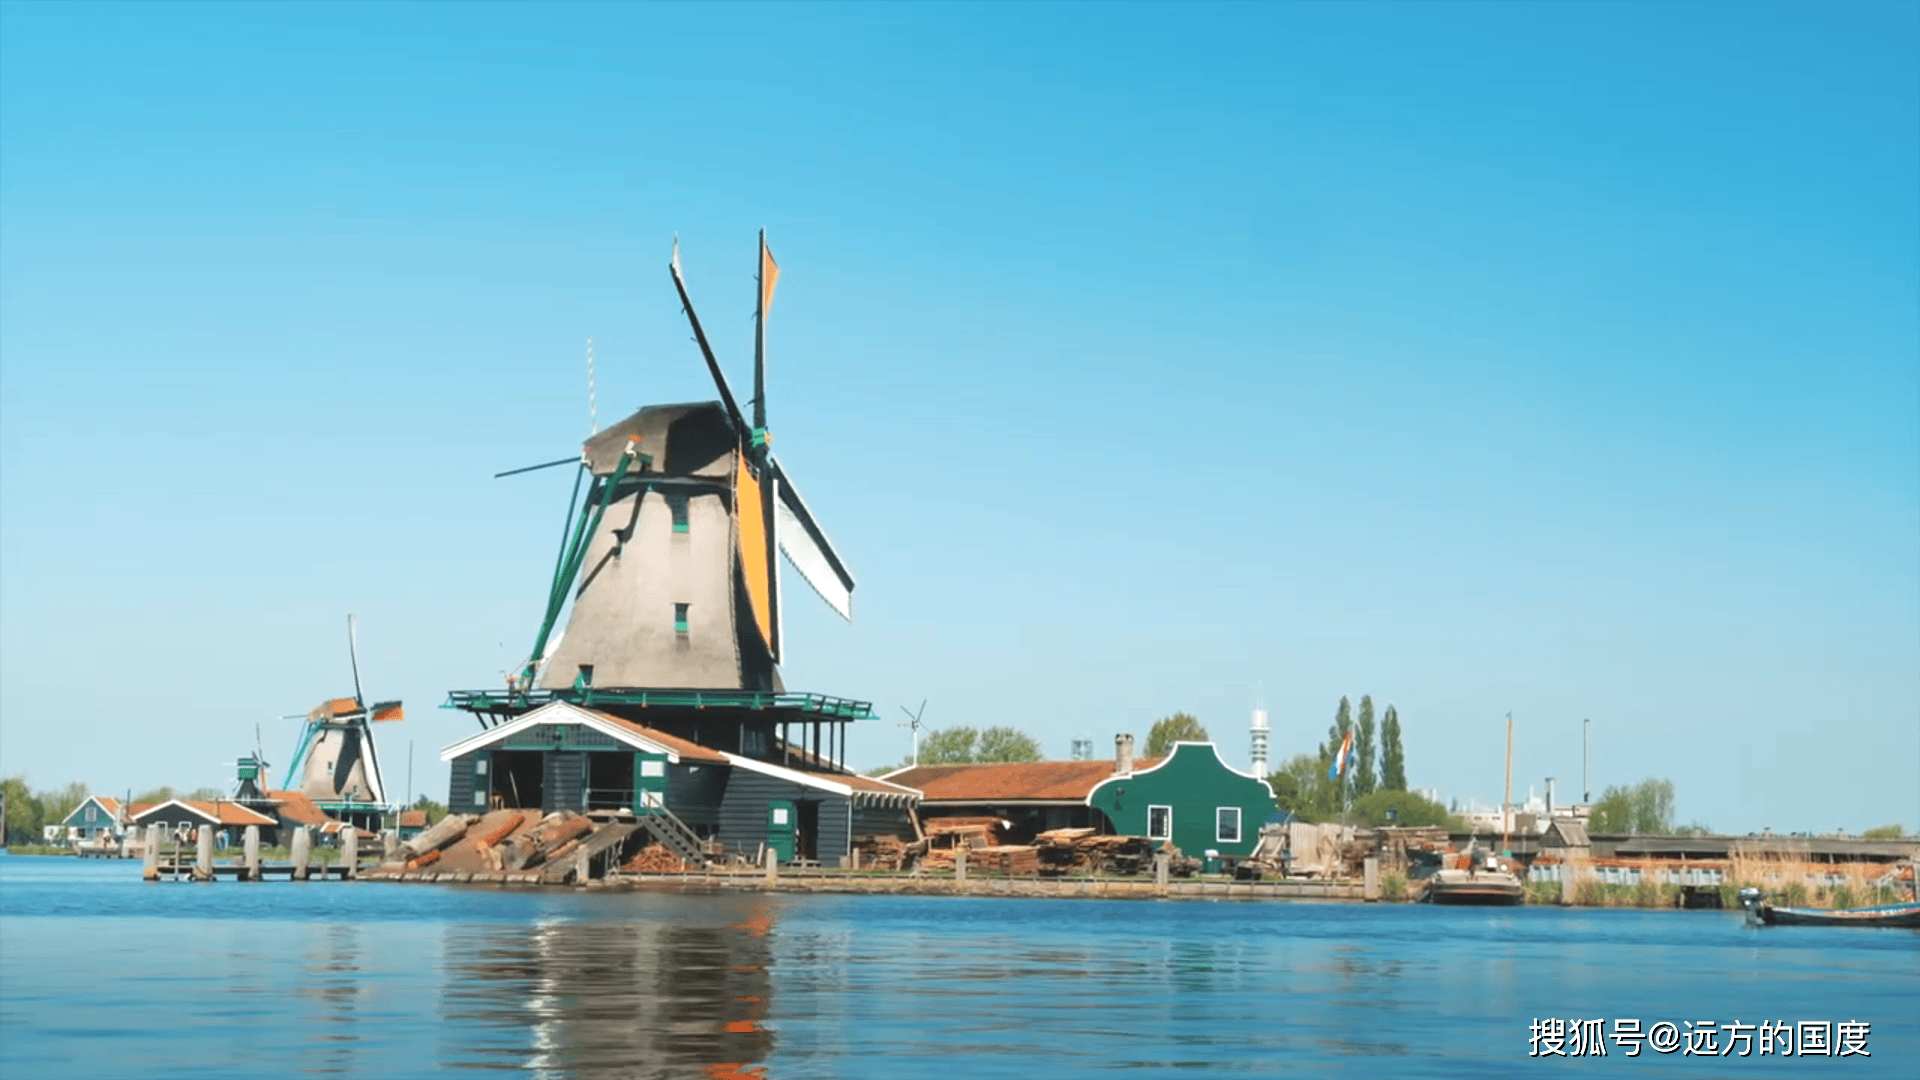 桑斯安斯风车村:荷兰乡村的诗意画卷